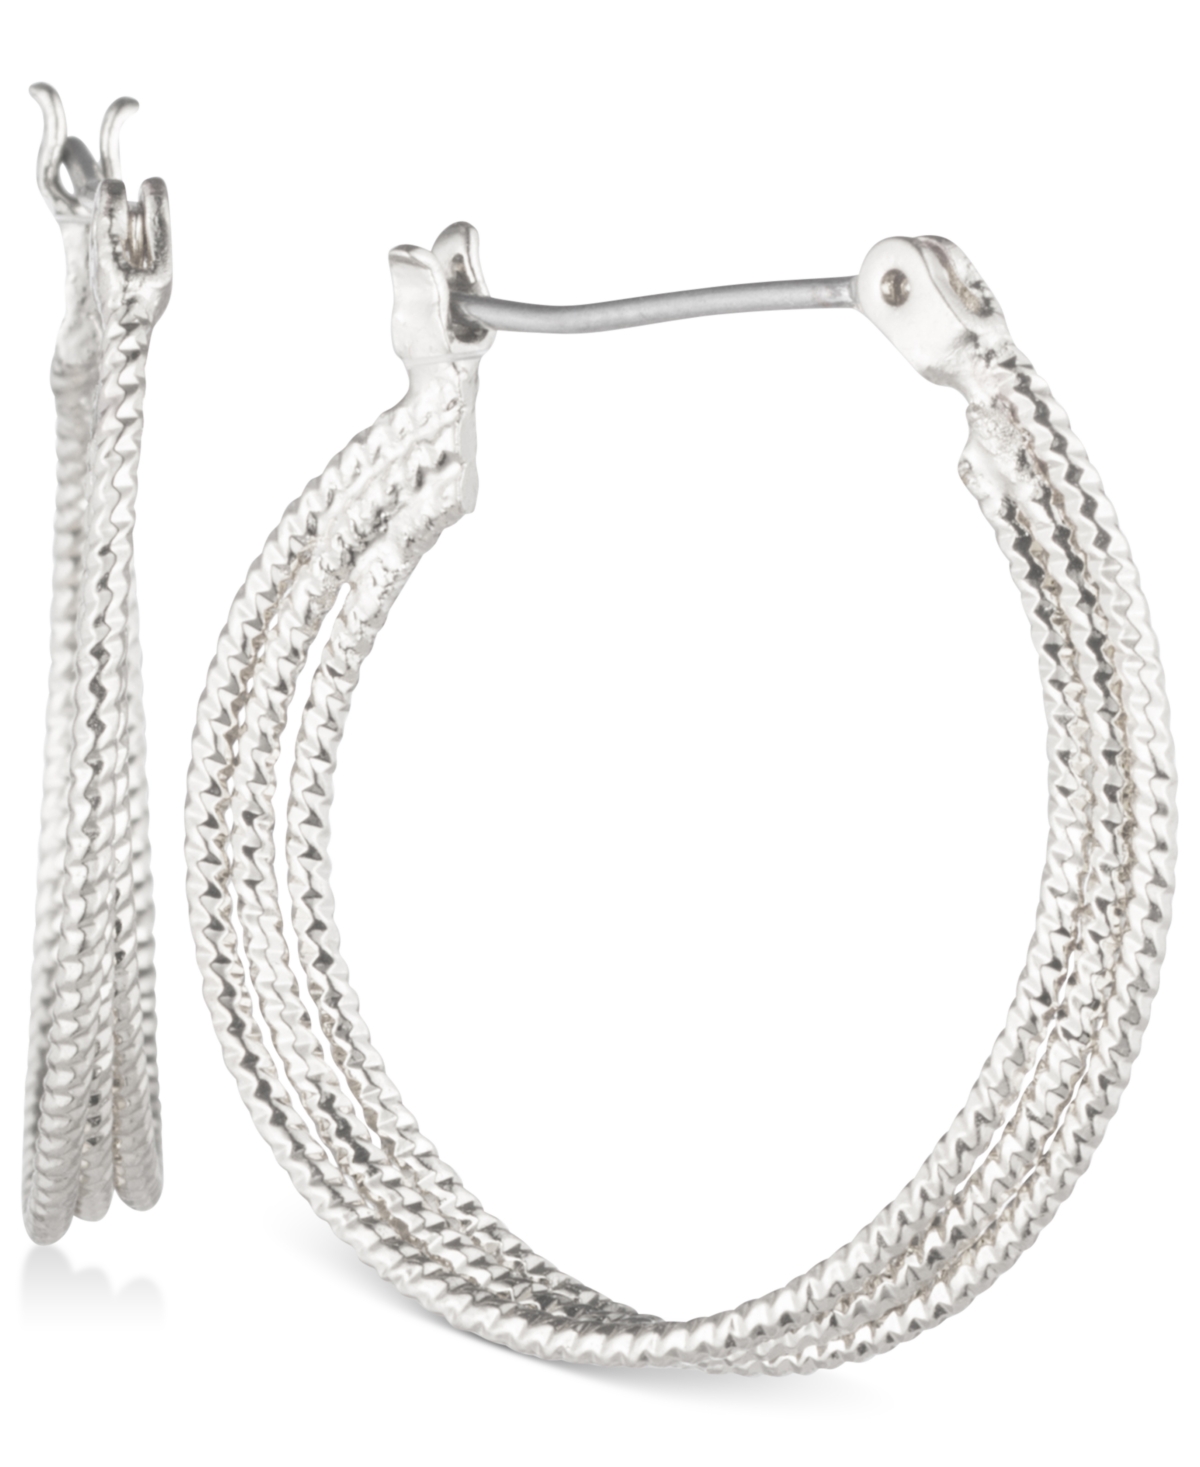 Multi-Row 1" Textured Hoop Earrings - Silver